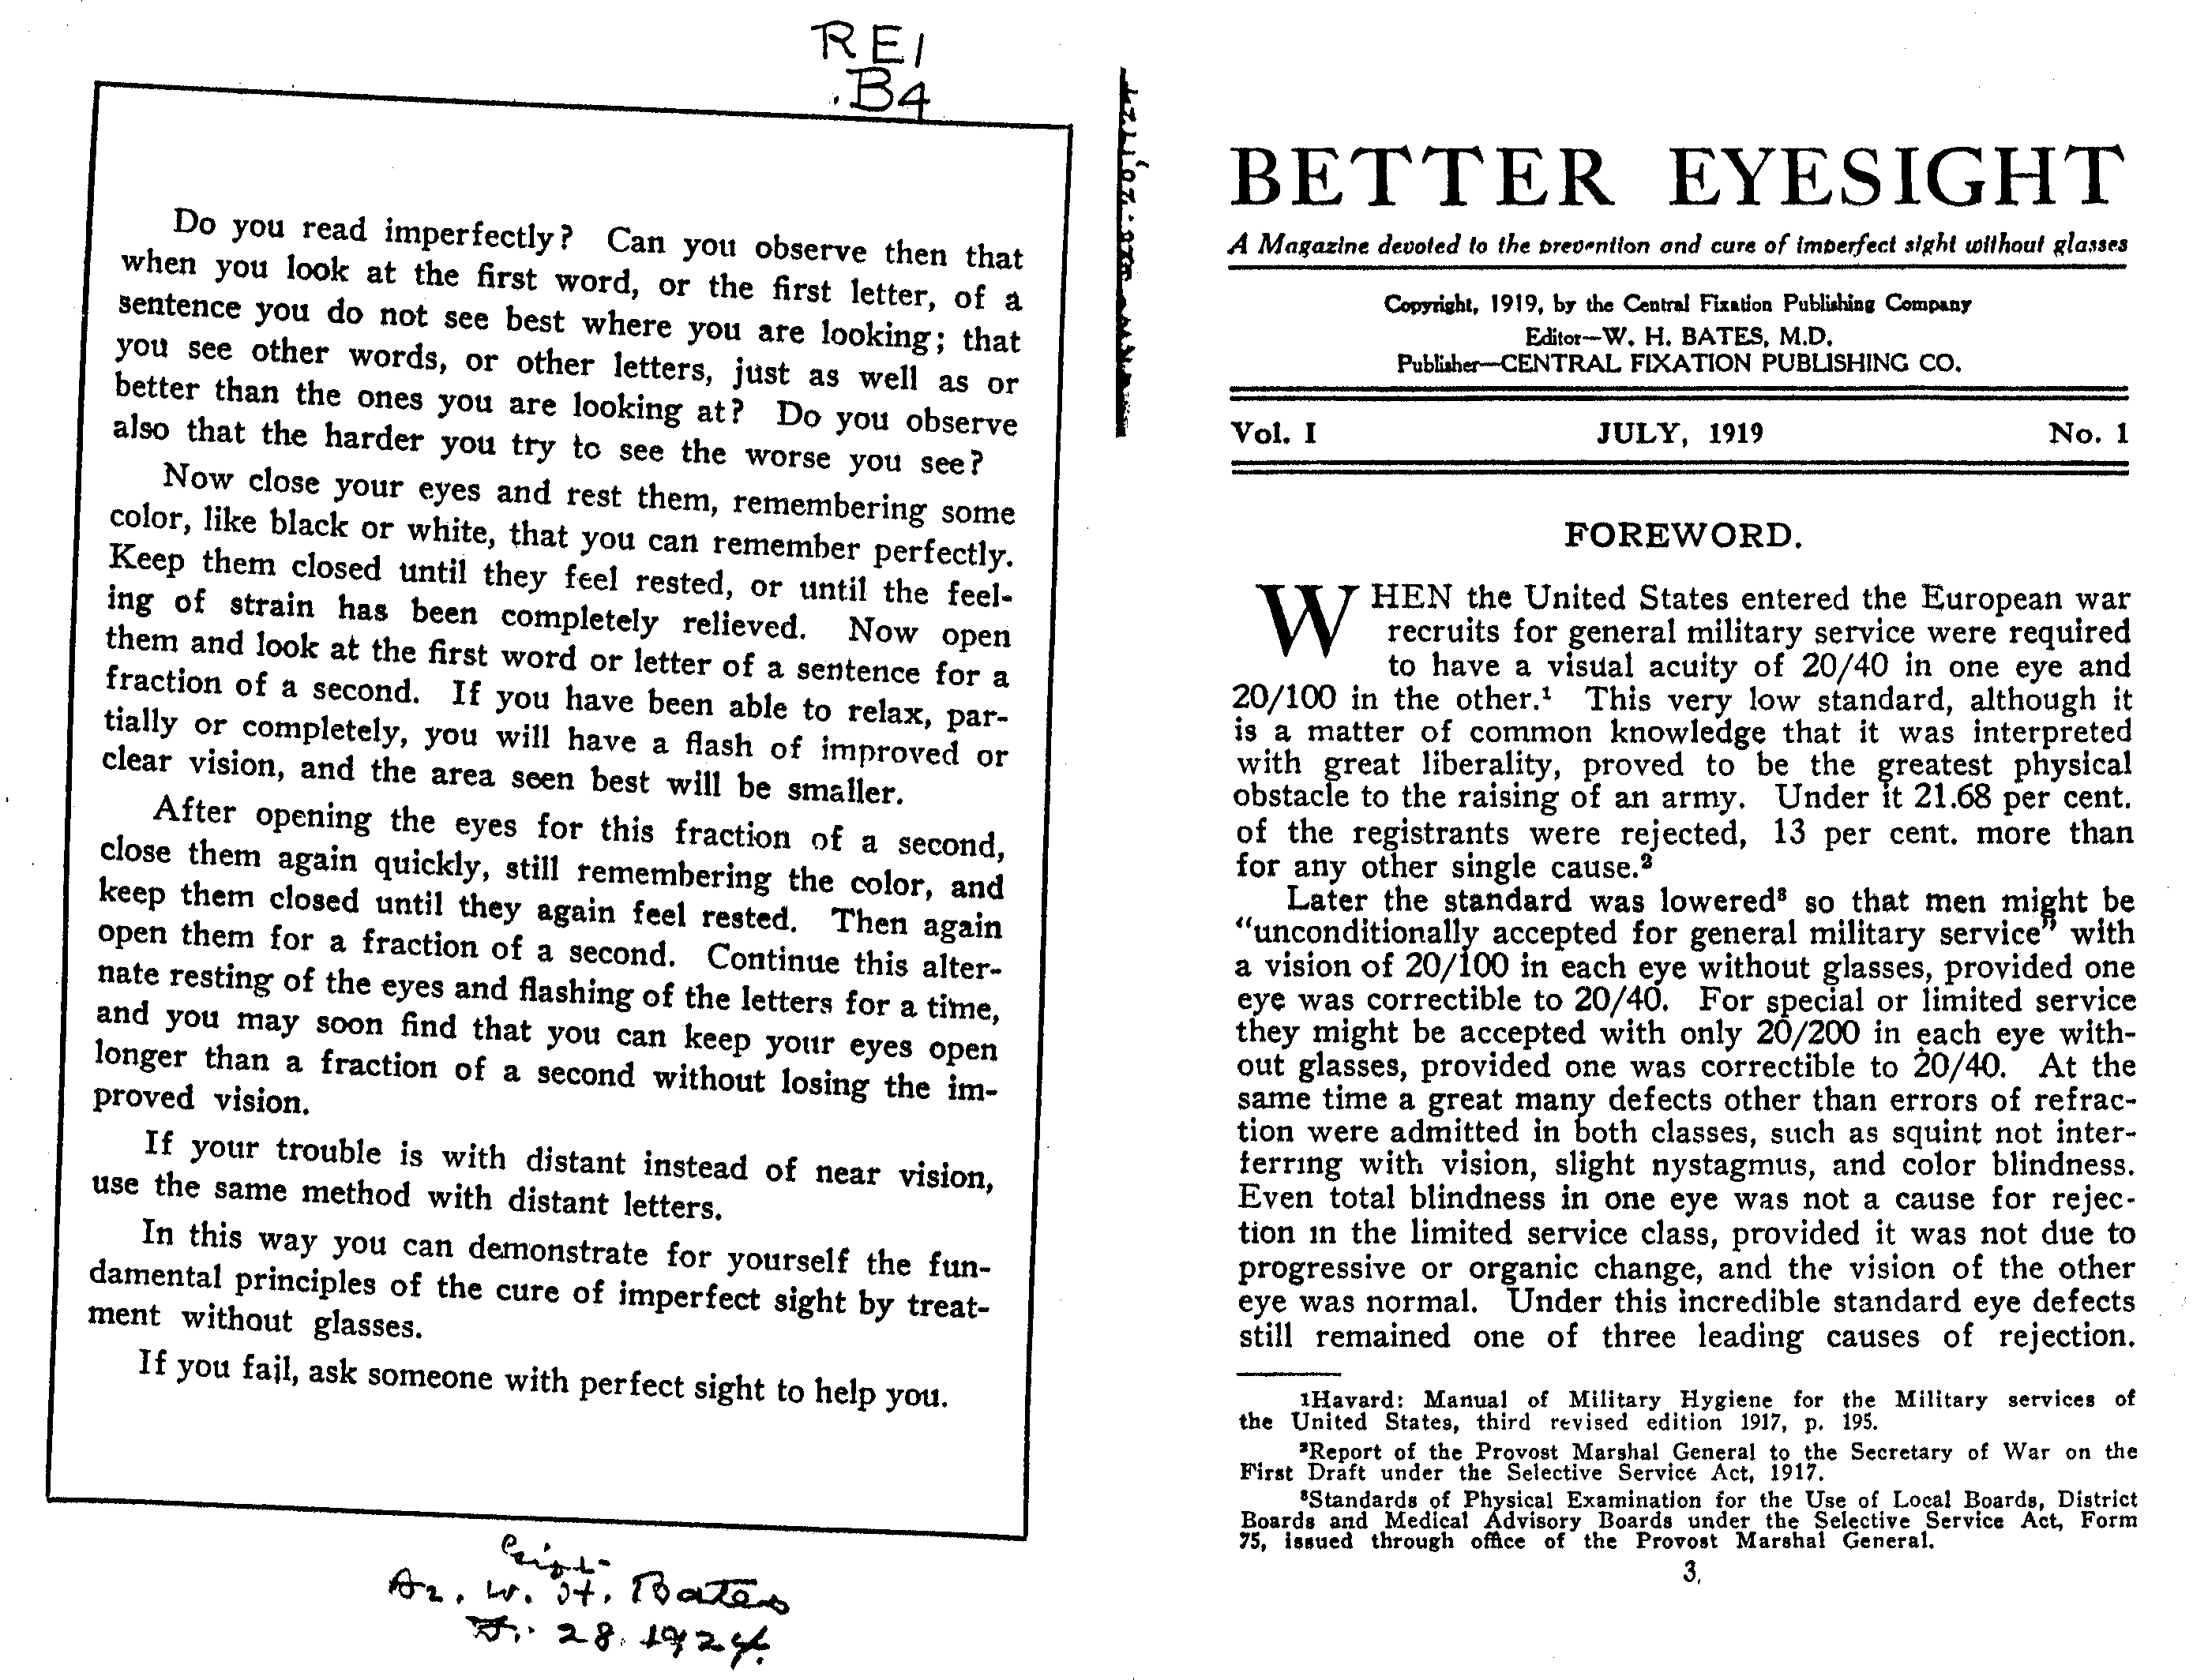 Better Eyesight page 2-3